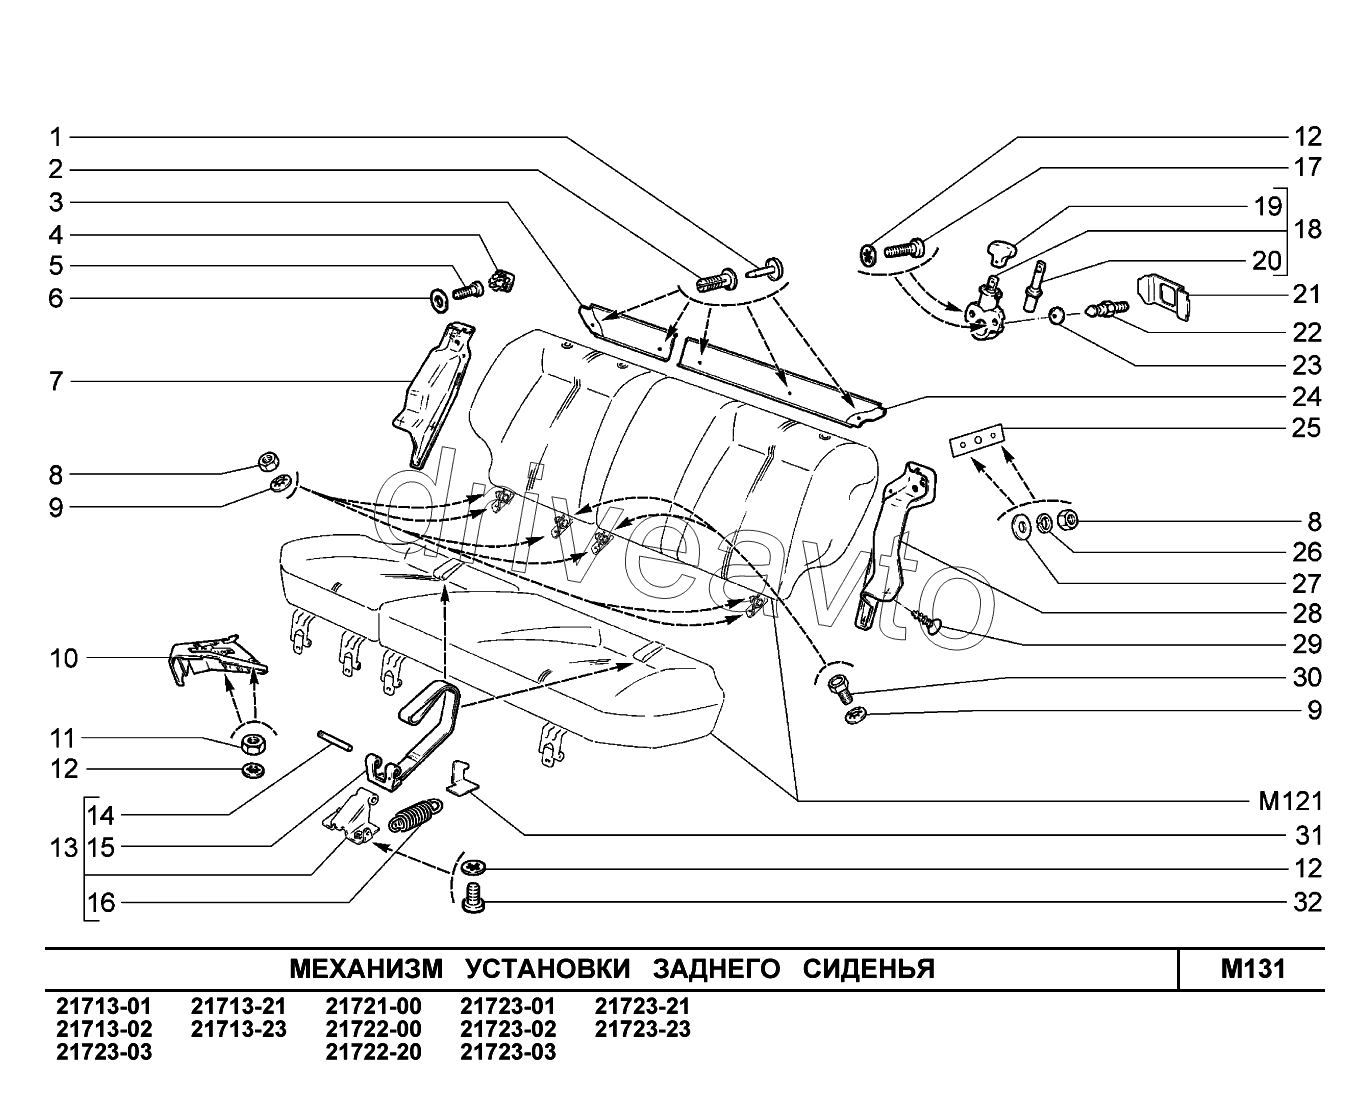 M131. Механизм установки заднего сиденья